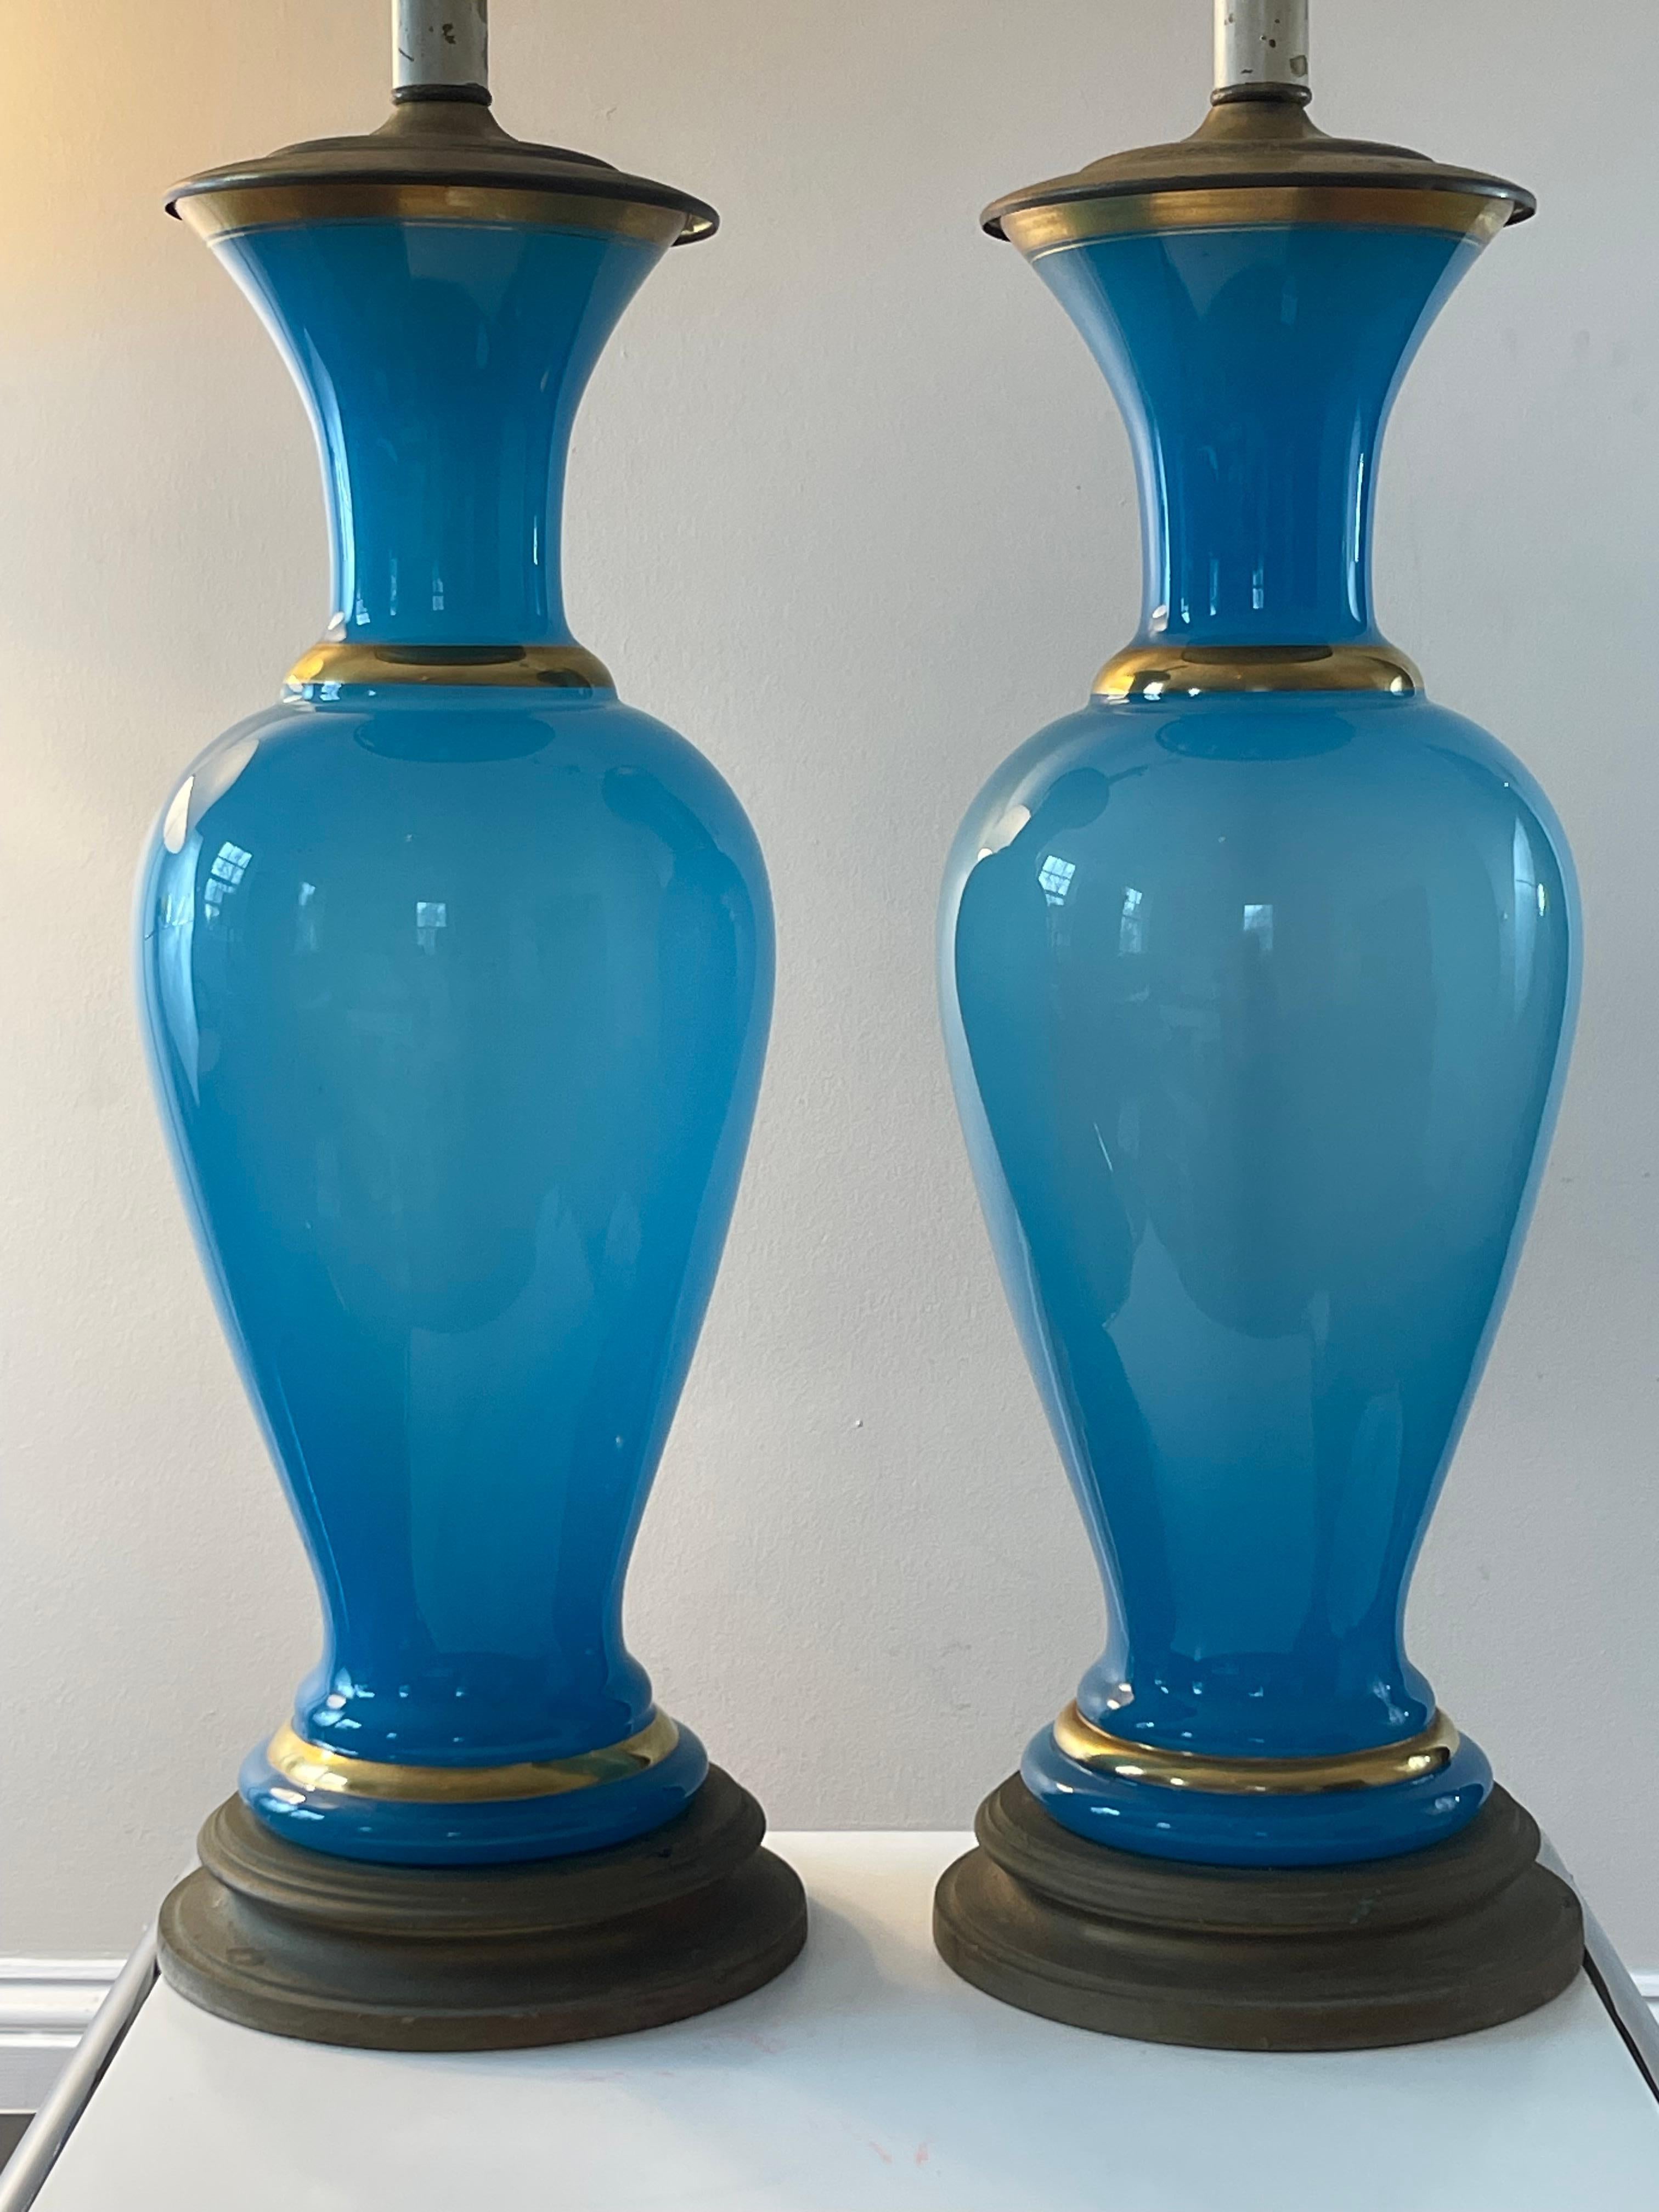 Lampes en verre turquoise serein en opaline française avec des détails dorés. Les lampes sont en état de marche, mais il est recommandé de refaire le câblage. Remarque : le corps en verre mesure 19,5